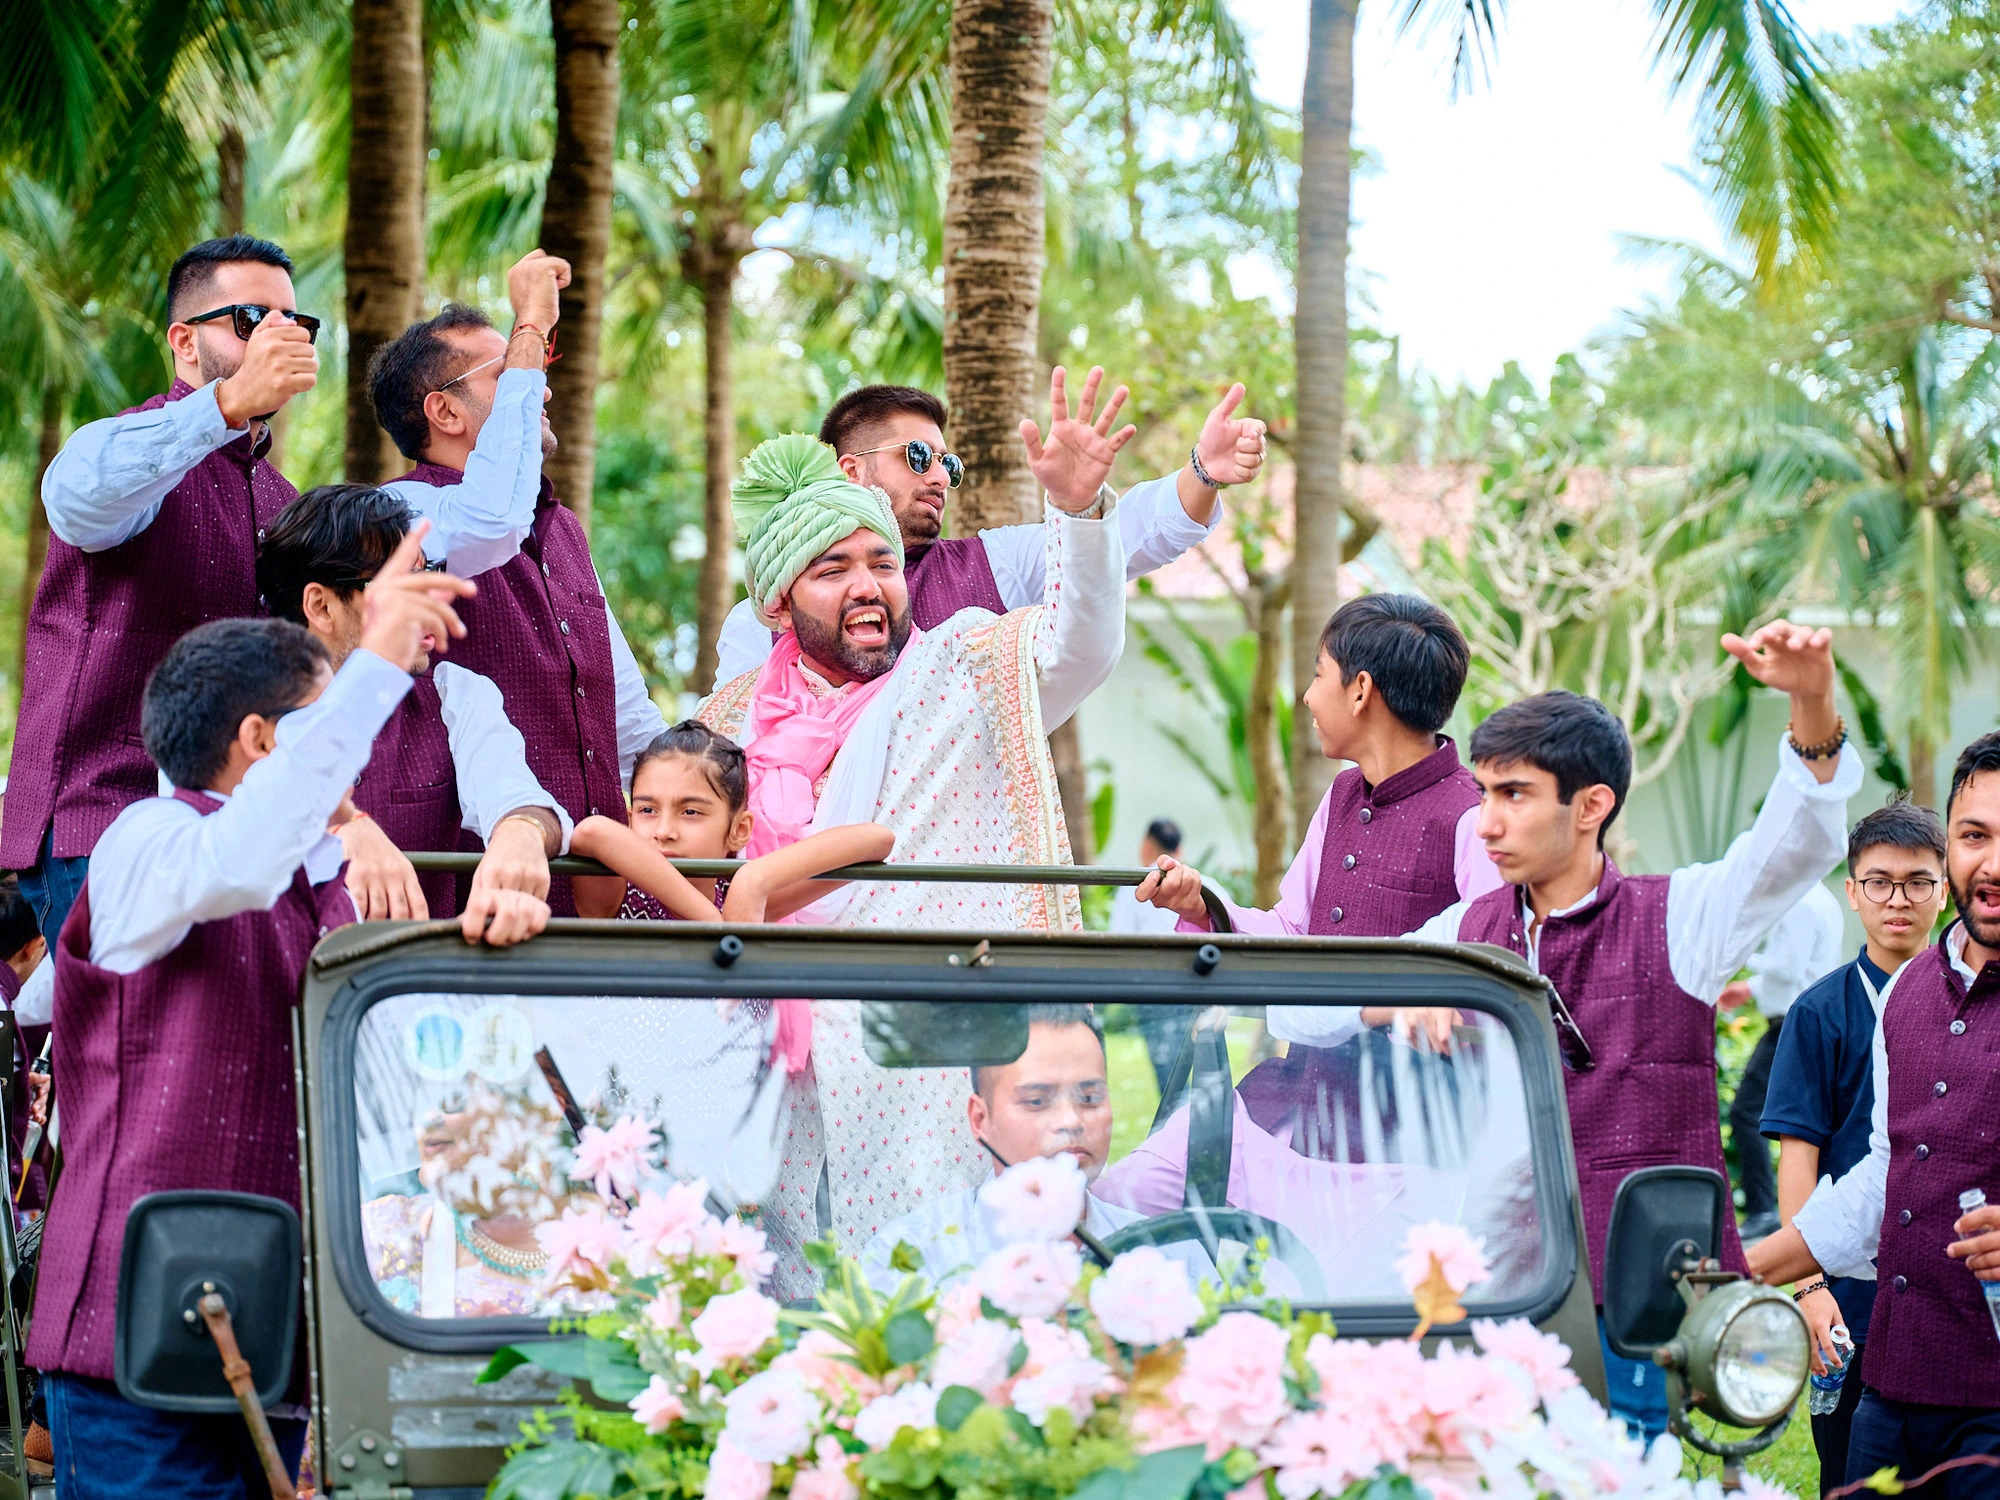 Da Nang a popular wedding destination for Indian couples